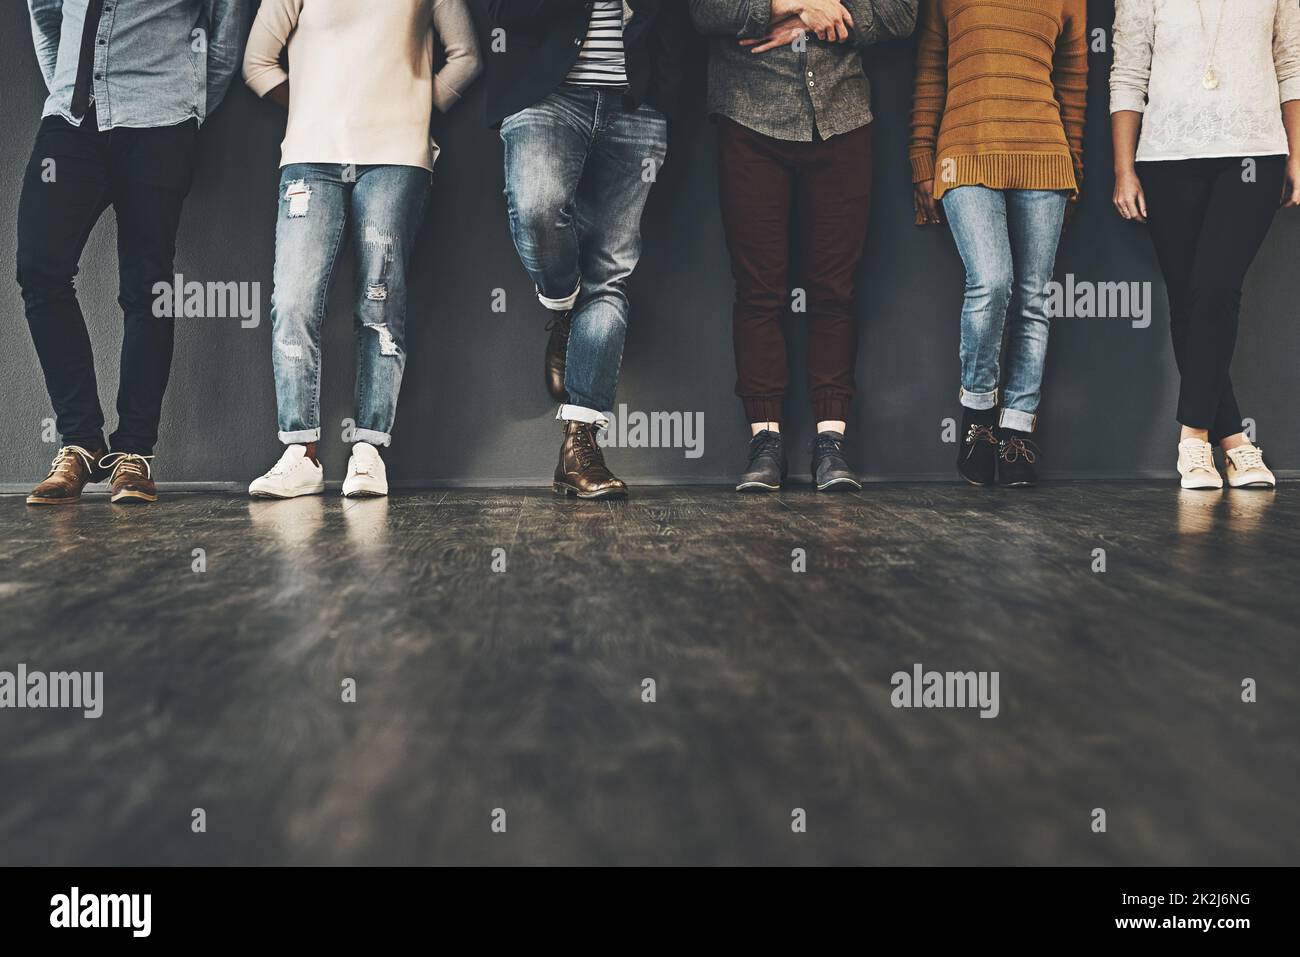 Siate alla moda nella vostra posizione. Studio girato di un gruppo di persone irriconoscibili in piedi su uno sfondo grigio. Foto Stock